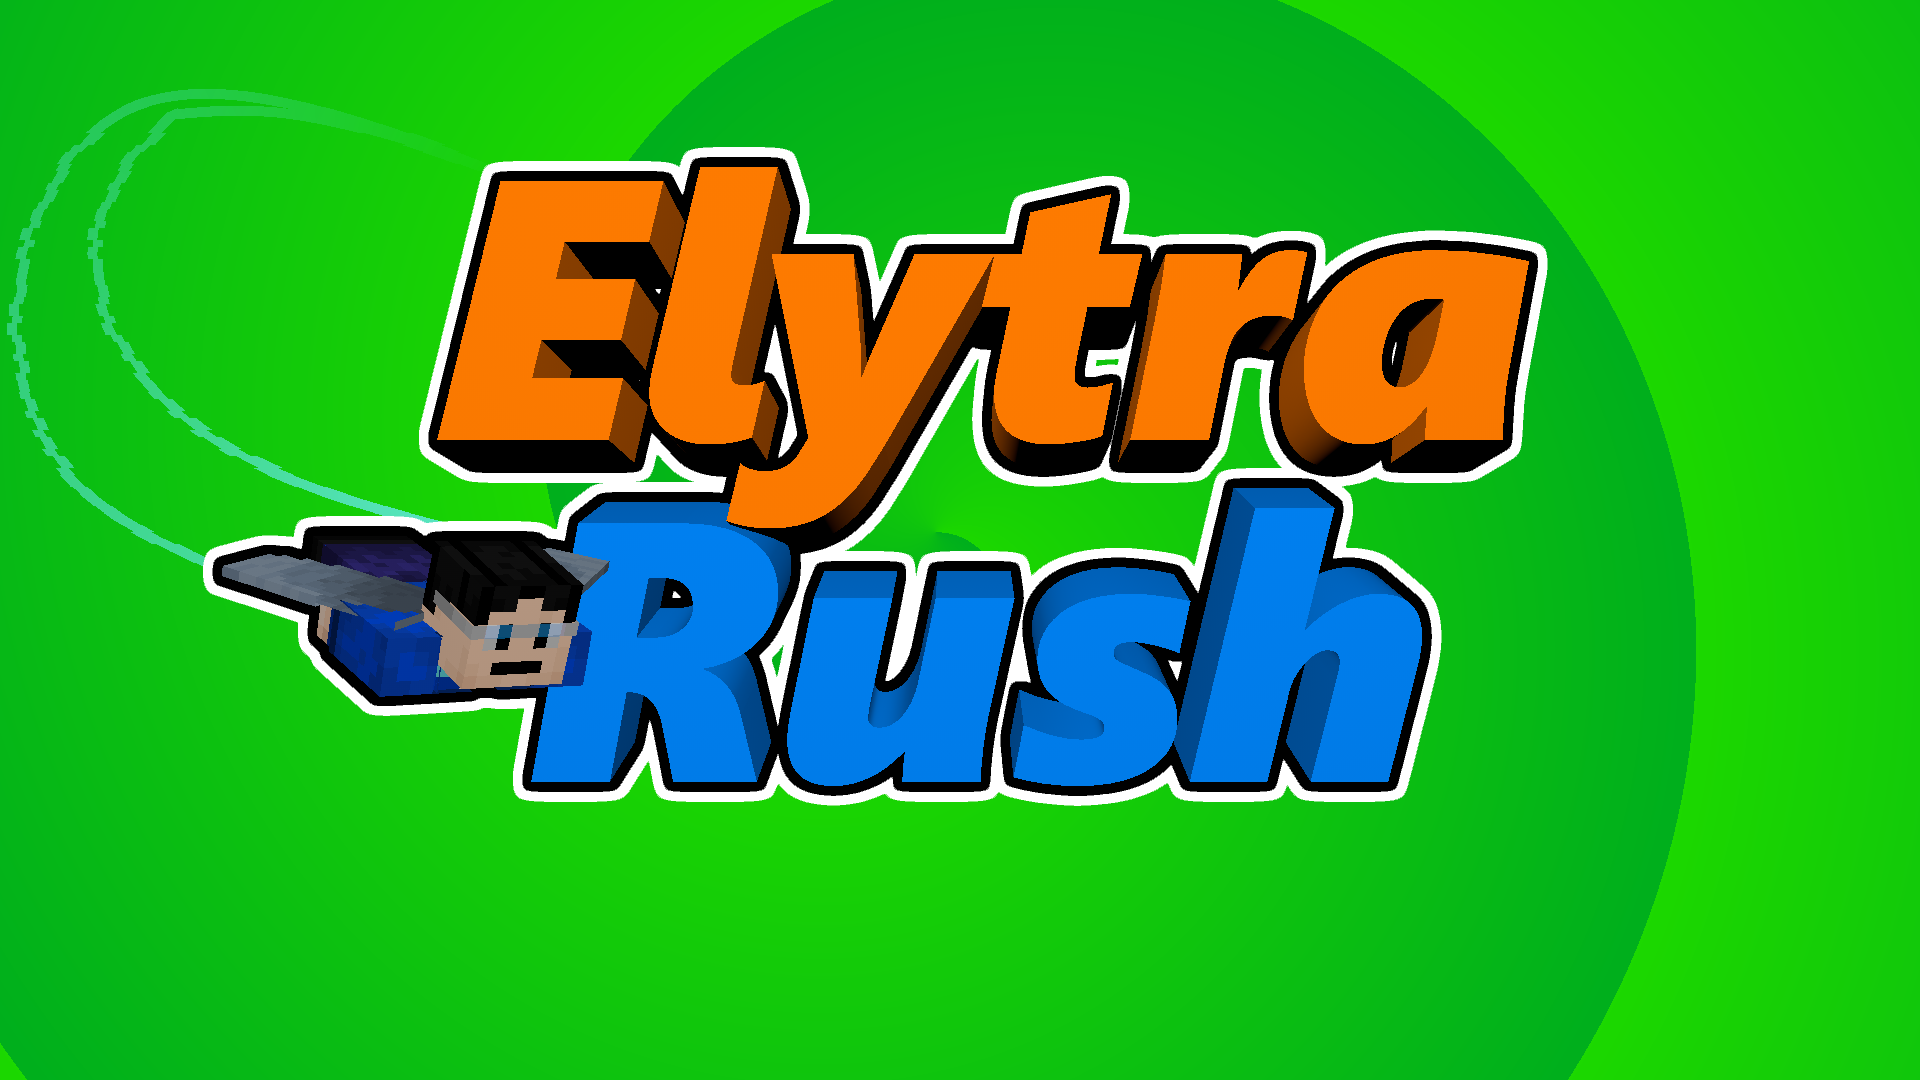 Elytra Rush - это отличная паркур карта на которой вам предстоит летать на элитрах